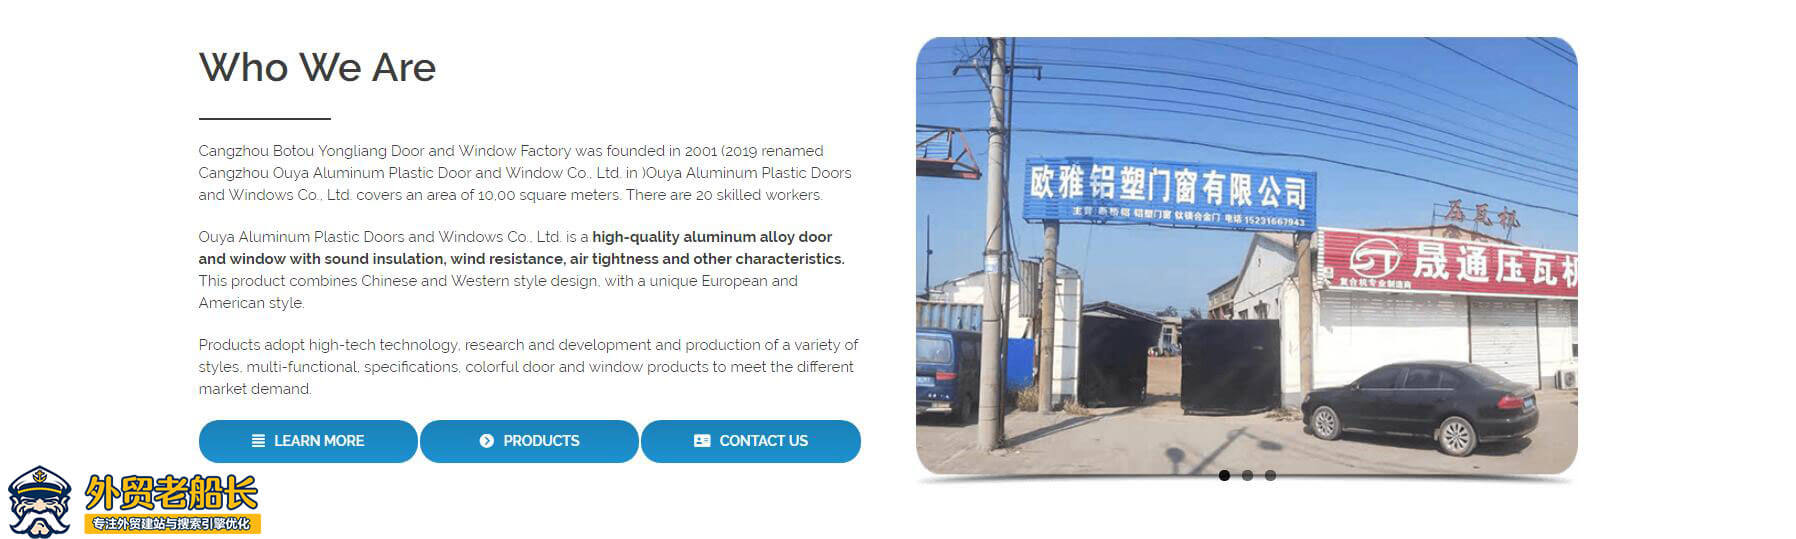 外贸营销网站首页公司介绍和工厂展示图-外贸老船长-01